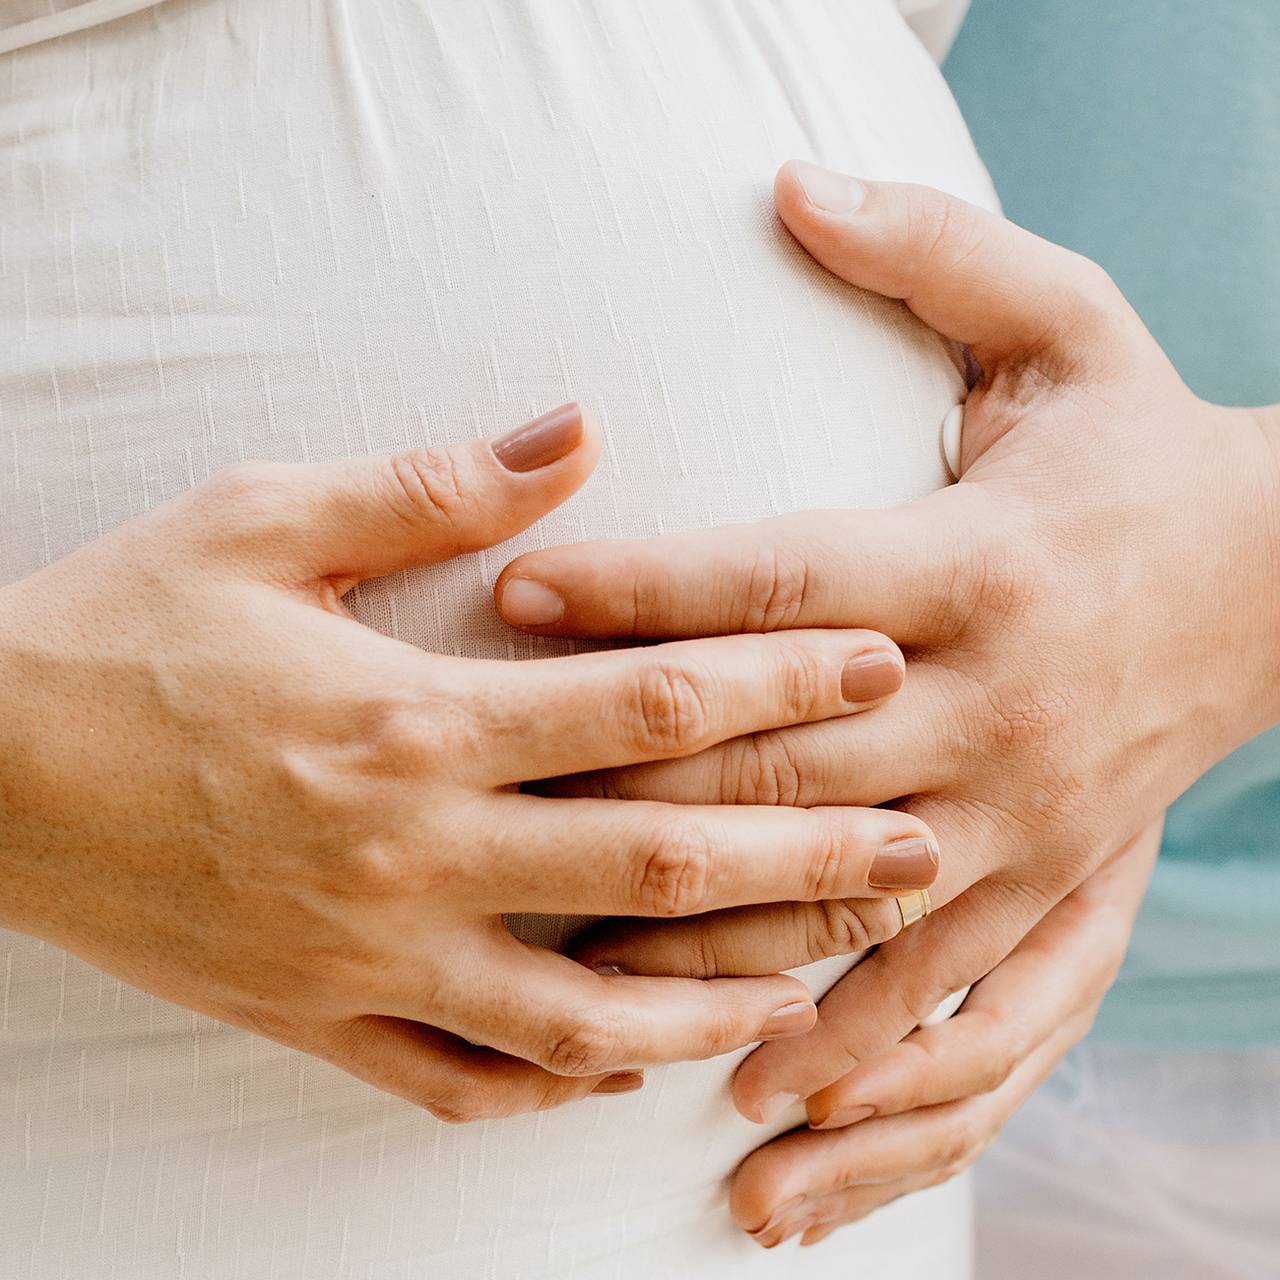 Можно ли заниматься сексом во время беременности? Отвечают гинекологи и сексологи